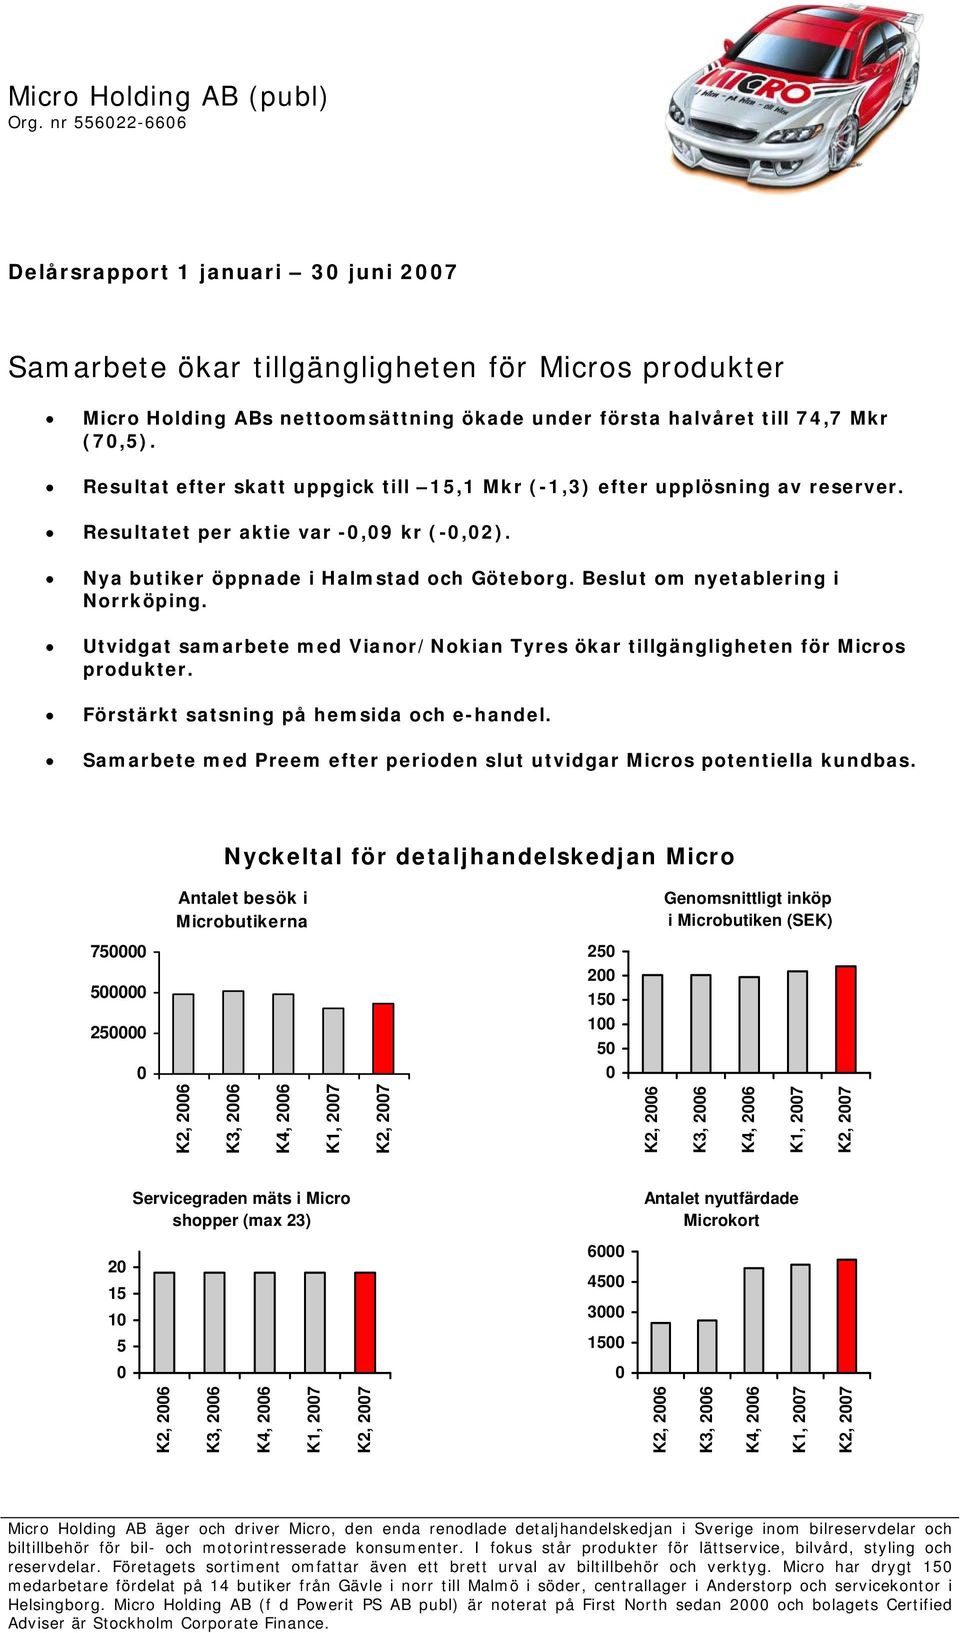 Resultat efter skatt uppgick till 15,1 Mkr (-1,3) efter upplösning av reserver. Resultatet per aktie var -,9 kr (-,2). Nya butiker öppnade i Halmstad och Göteborg. Beslut om nyetablering i Norrköping.